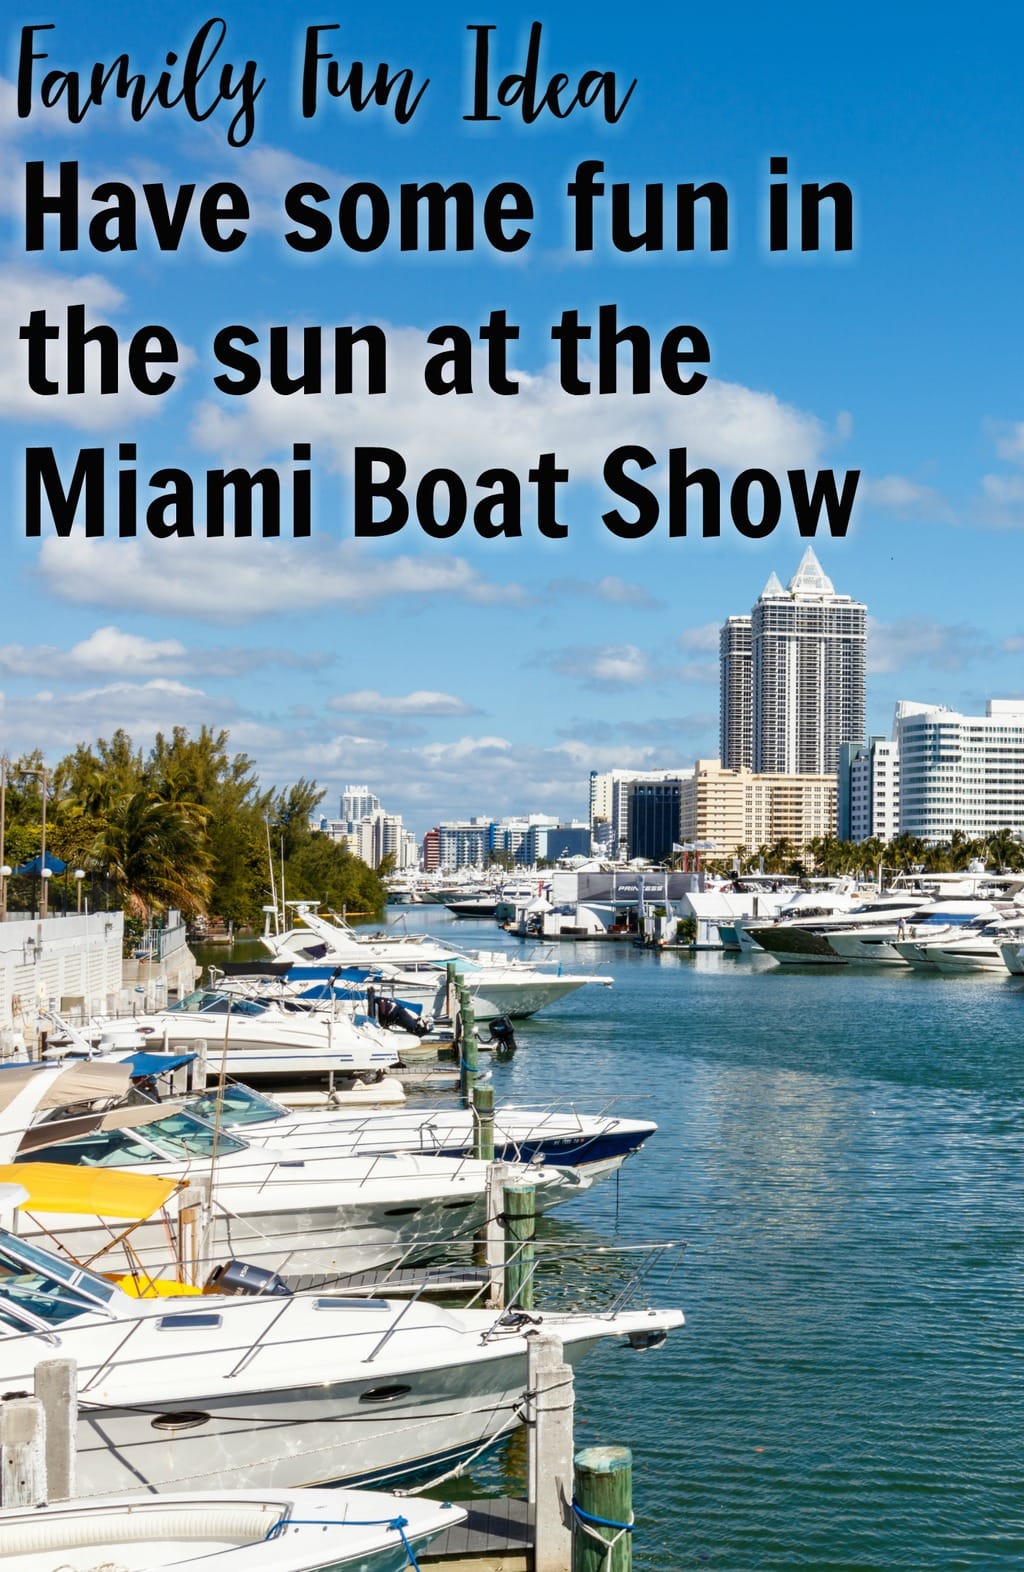 Family Fun in the Sun - The Miami International Boat Show ..